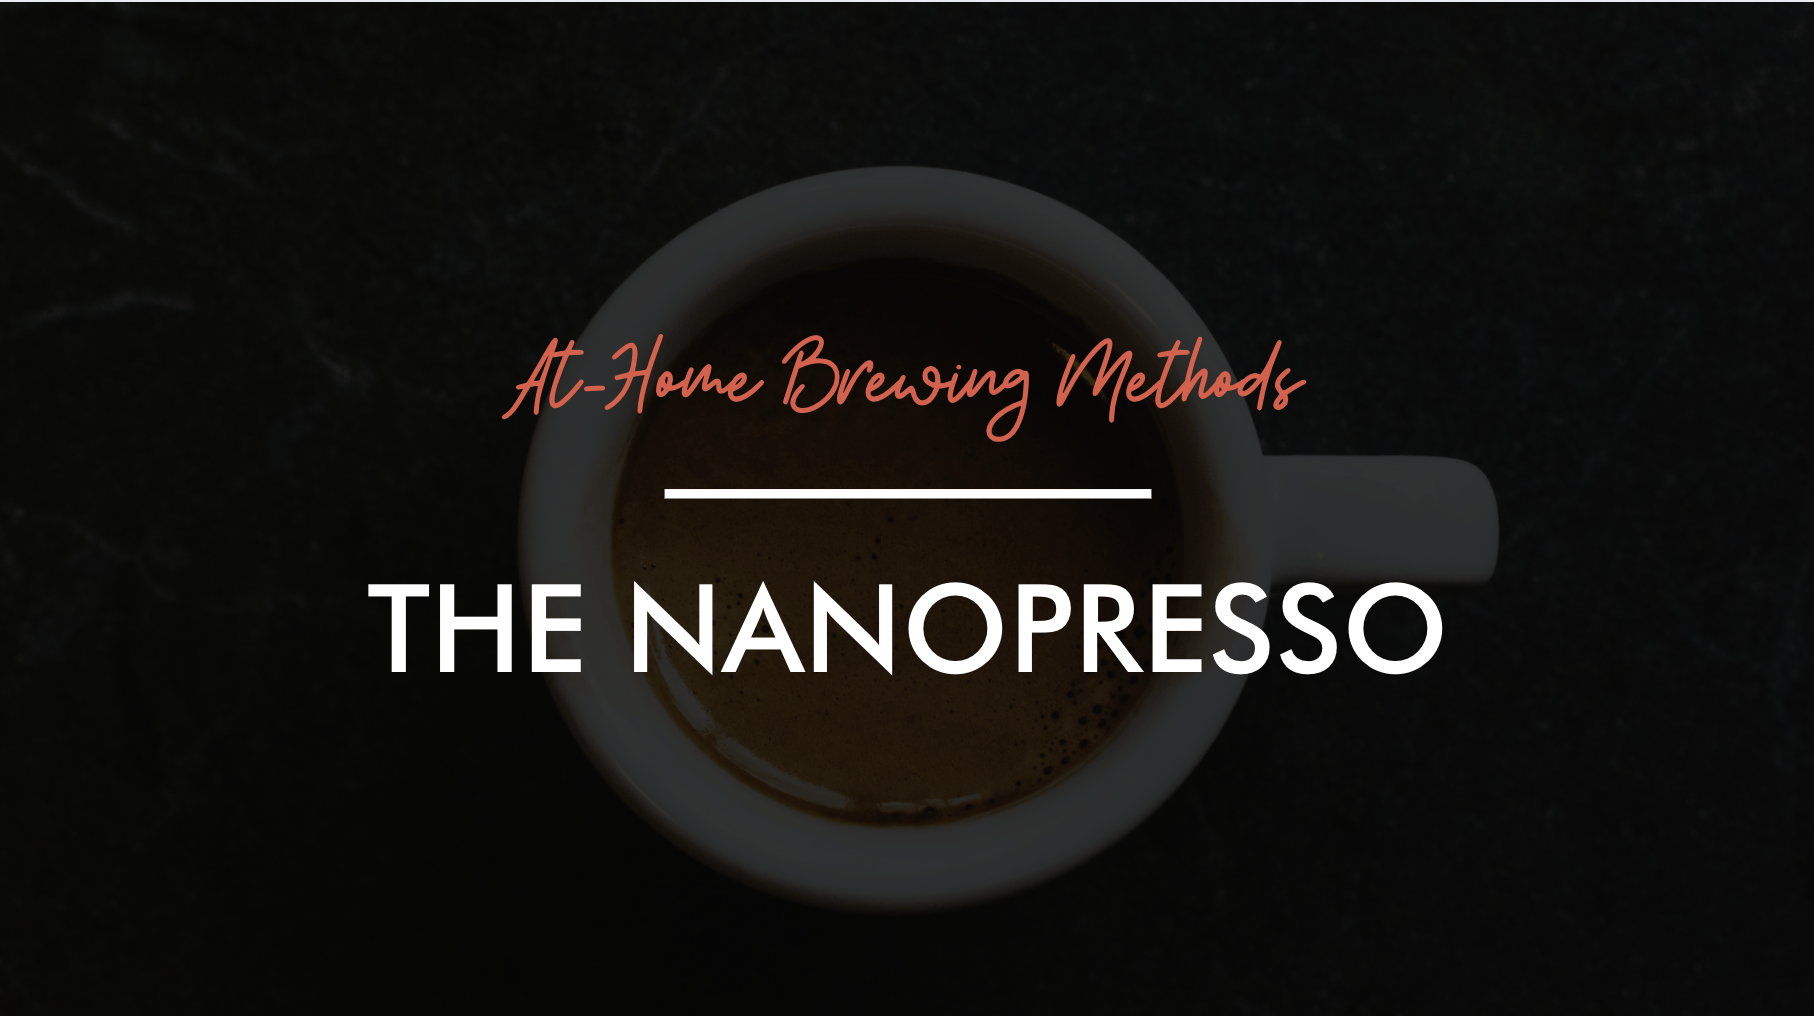 Home Brewing Methods: The Nanopresso